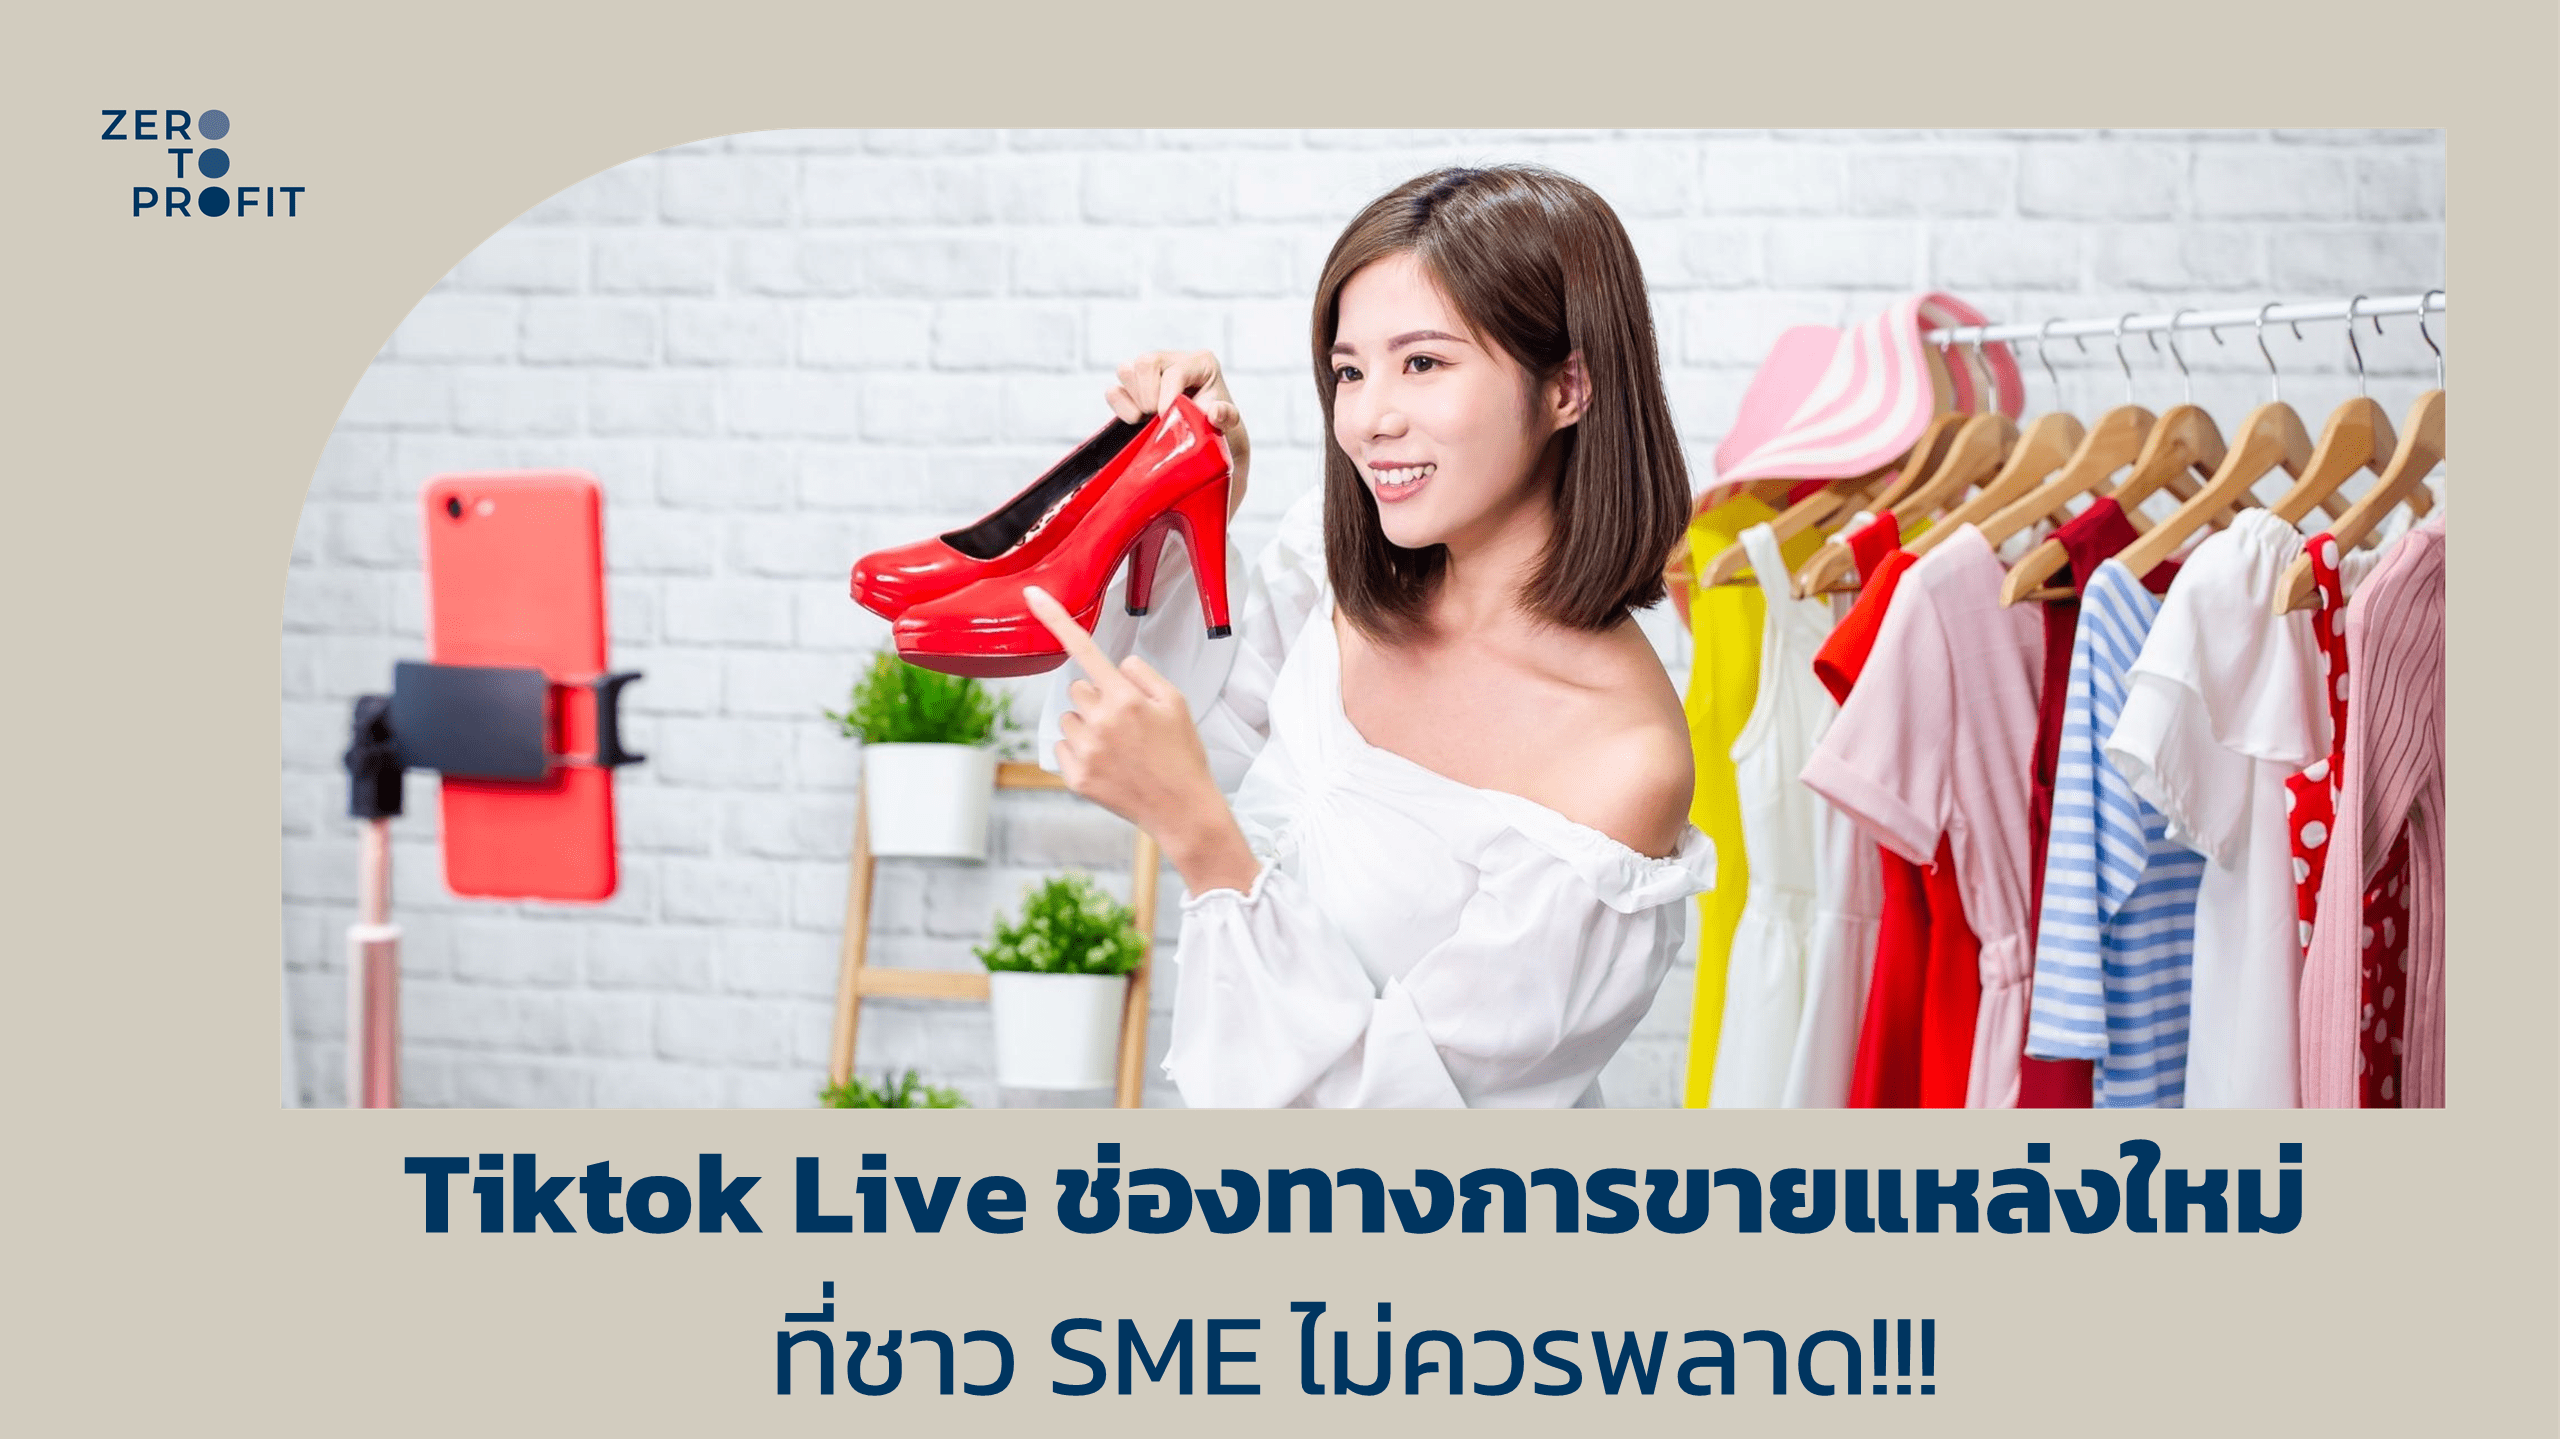 Tiktok Live ช่องทางการขายแหล่งใหม่ ที่ชาว SME ไม่ควรพลาด!!!